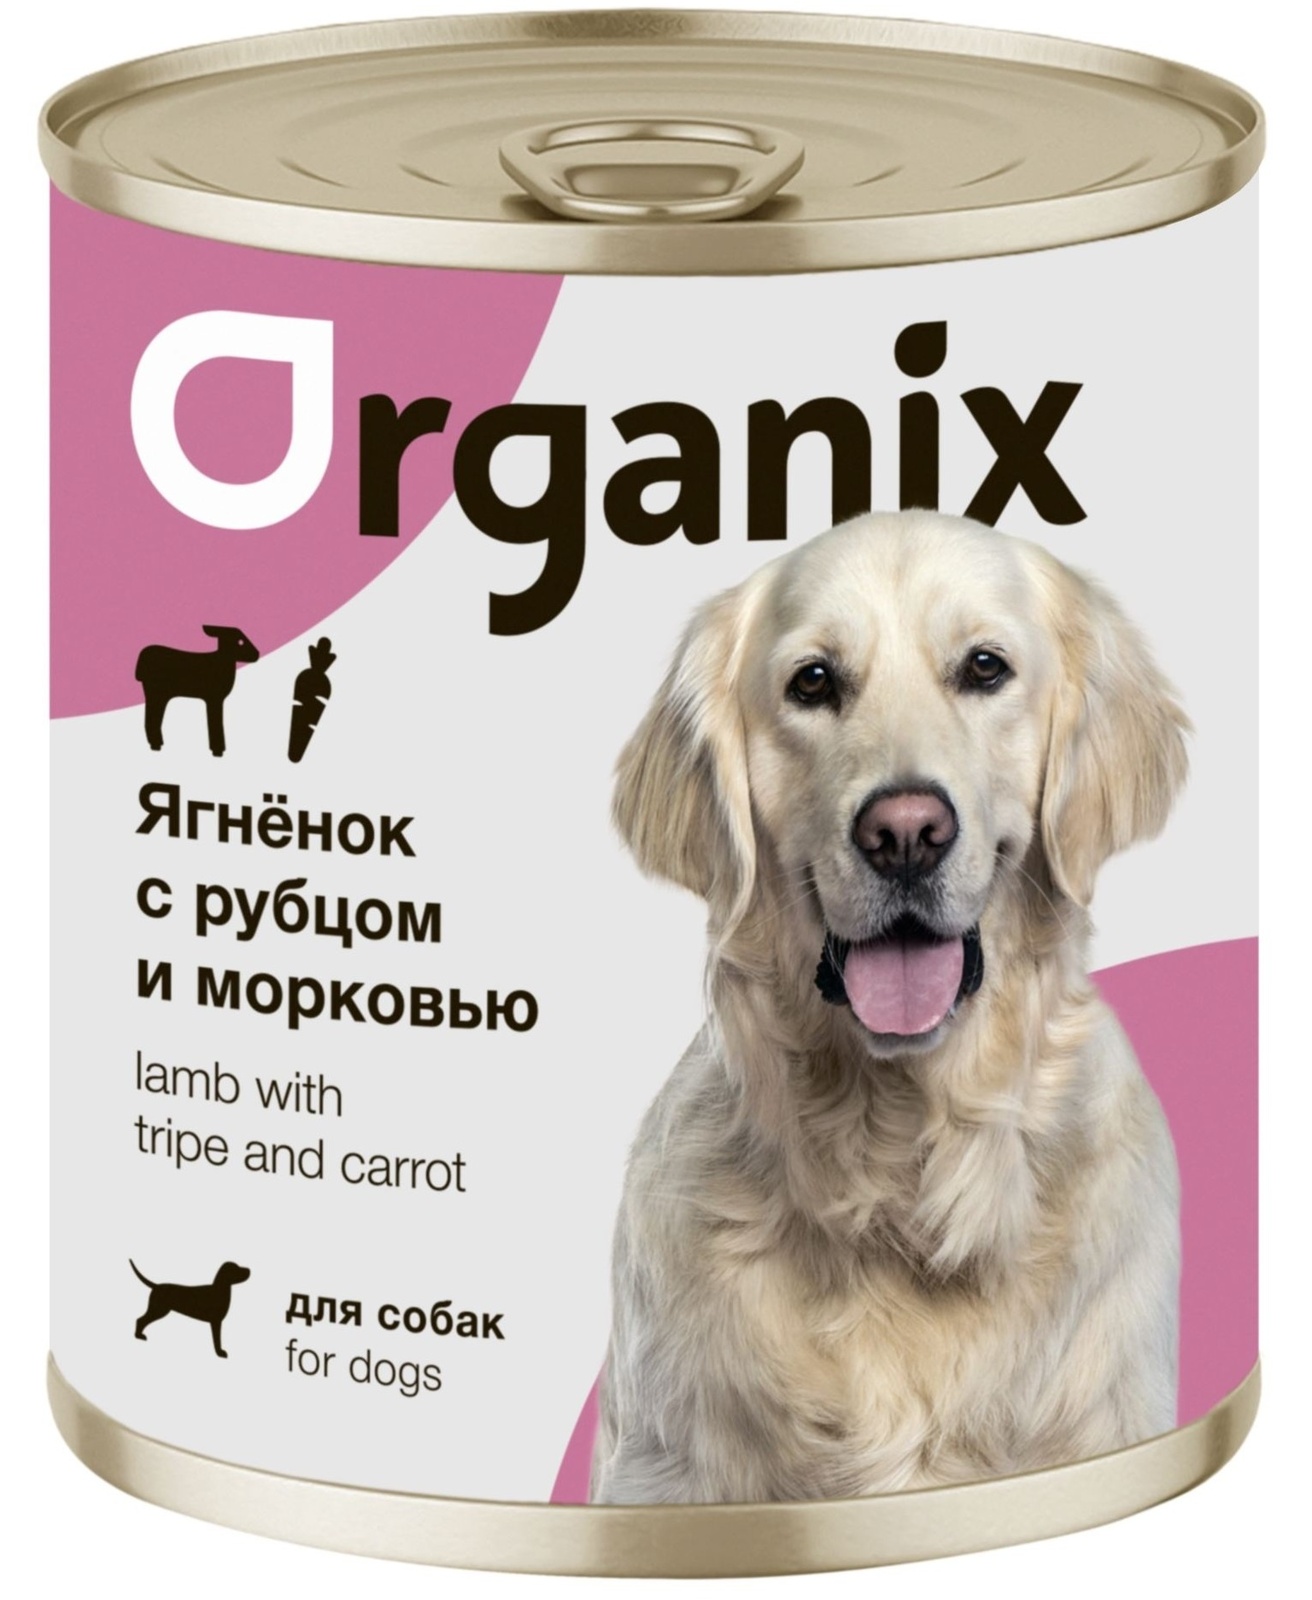 Organix консервы Organix консервы для собак Ягненок с рубцом и морковью (400 г) organix консервы organix монобелковые премиум консервы для собак с гусем 400 г